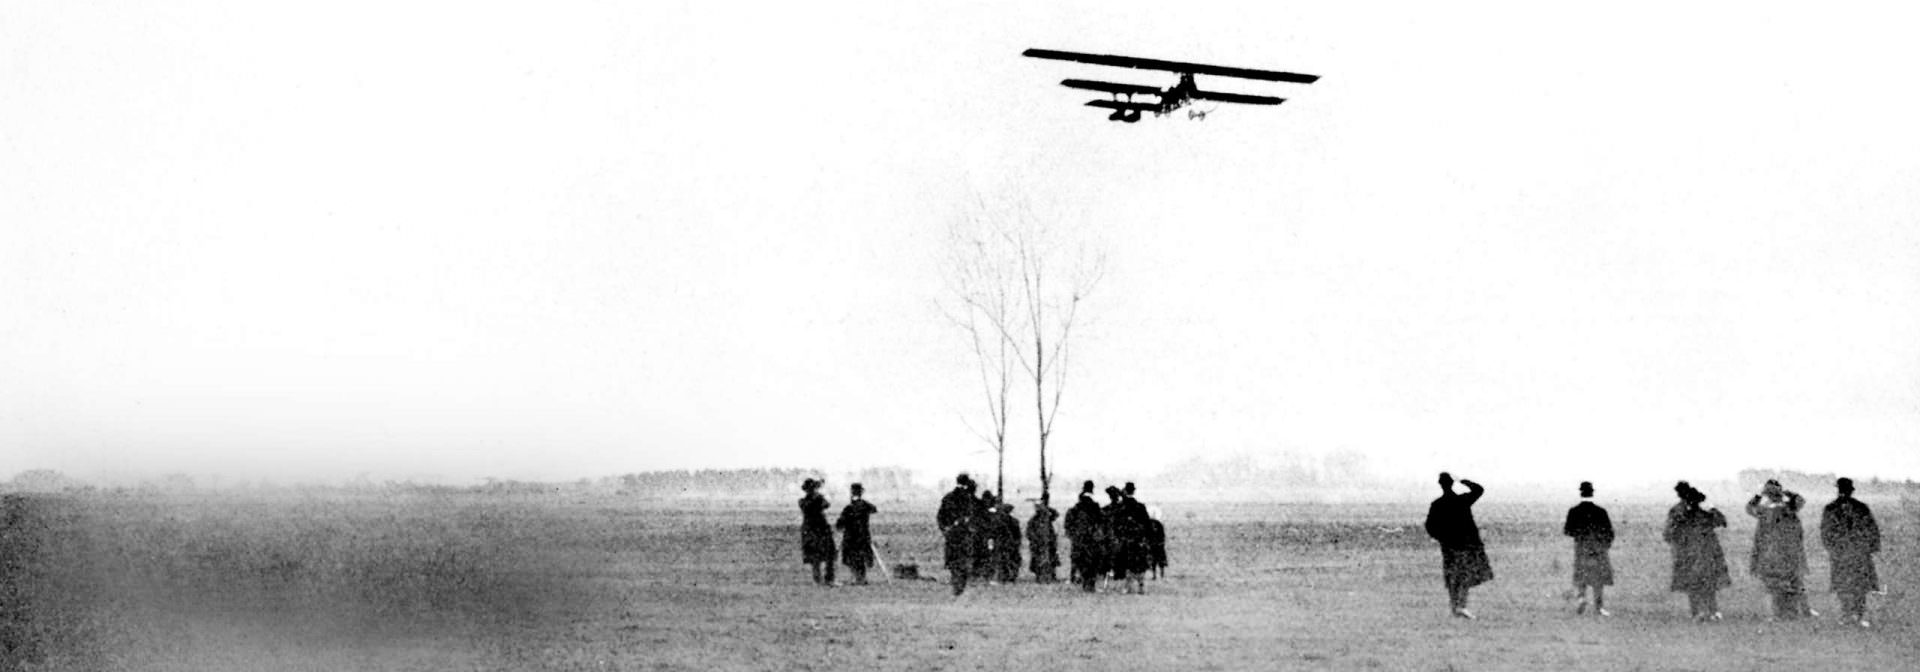 Historická černobílá fotografie ukazující dvouplošník BMW letící nízko nad polem se skupinou lidí přihlížejících ze země.